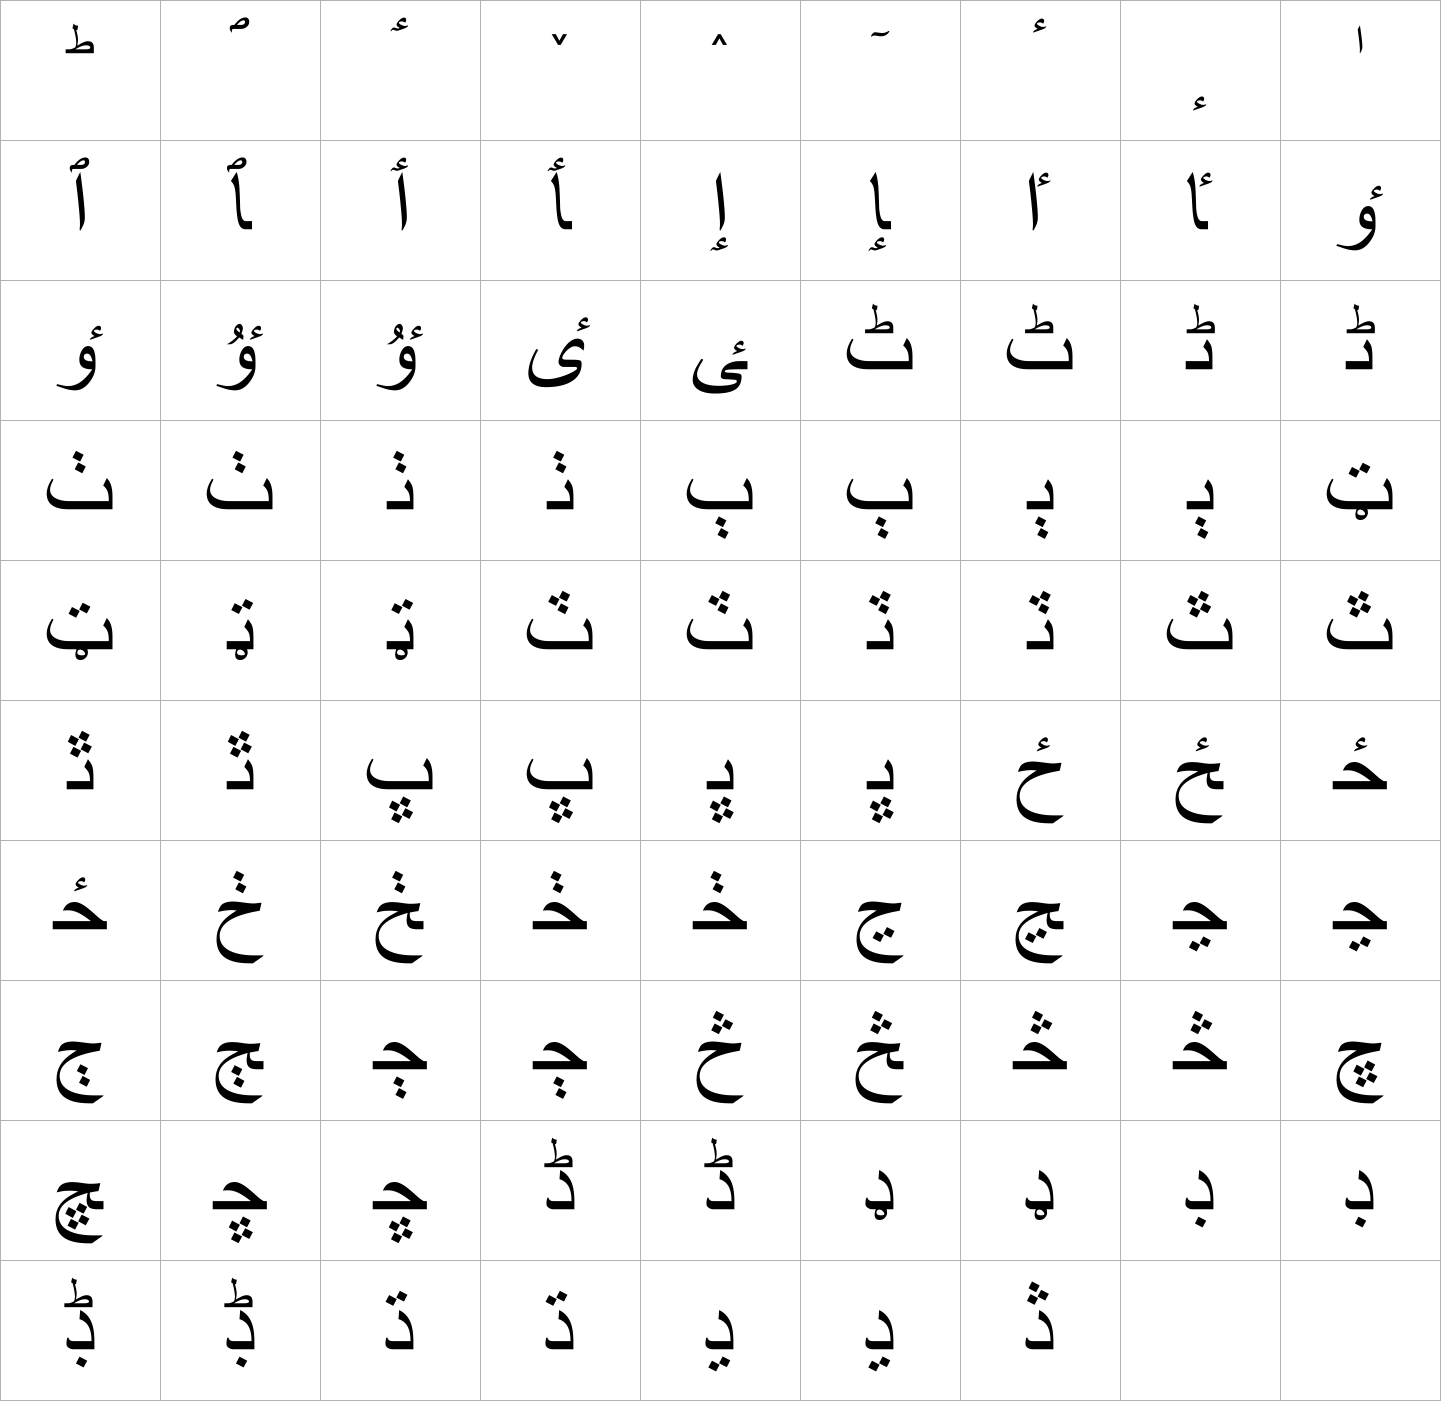 Arial Arabic Regular image